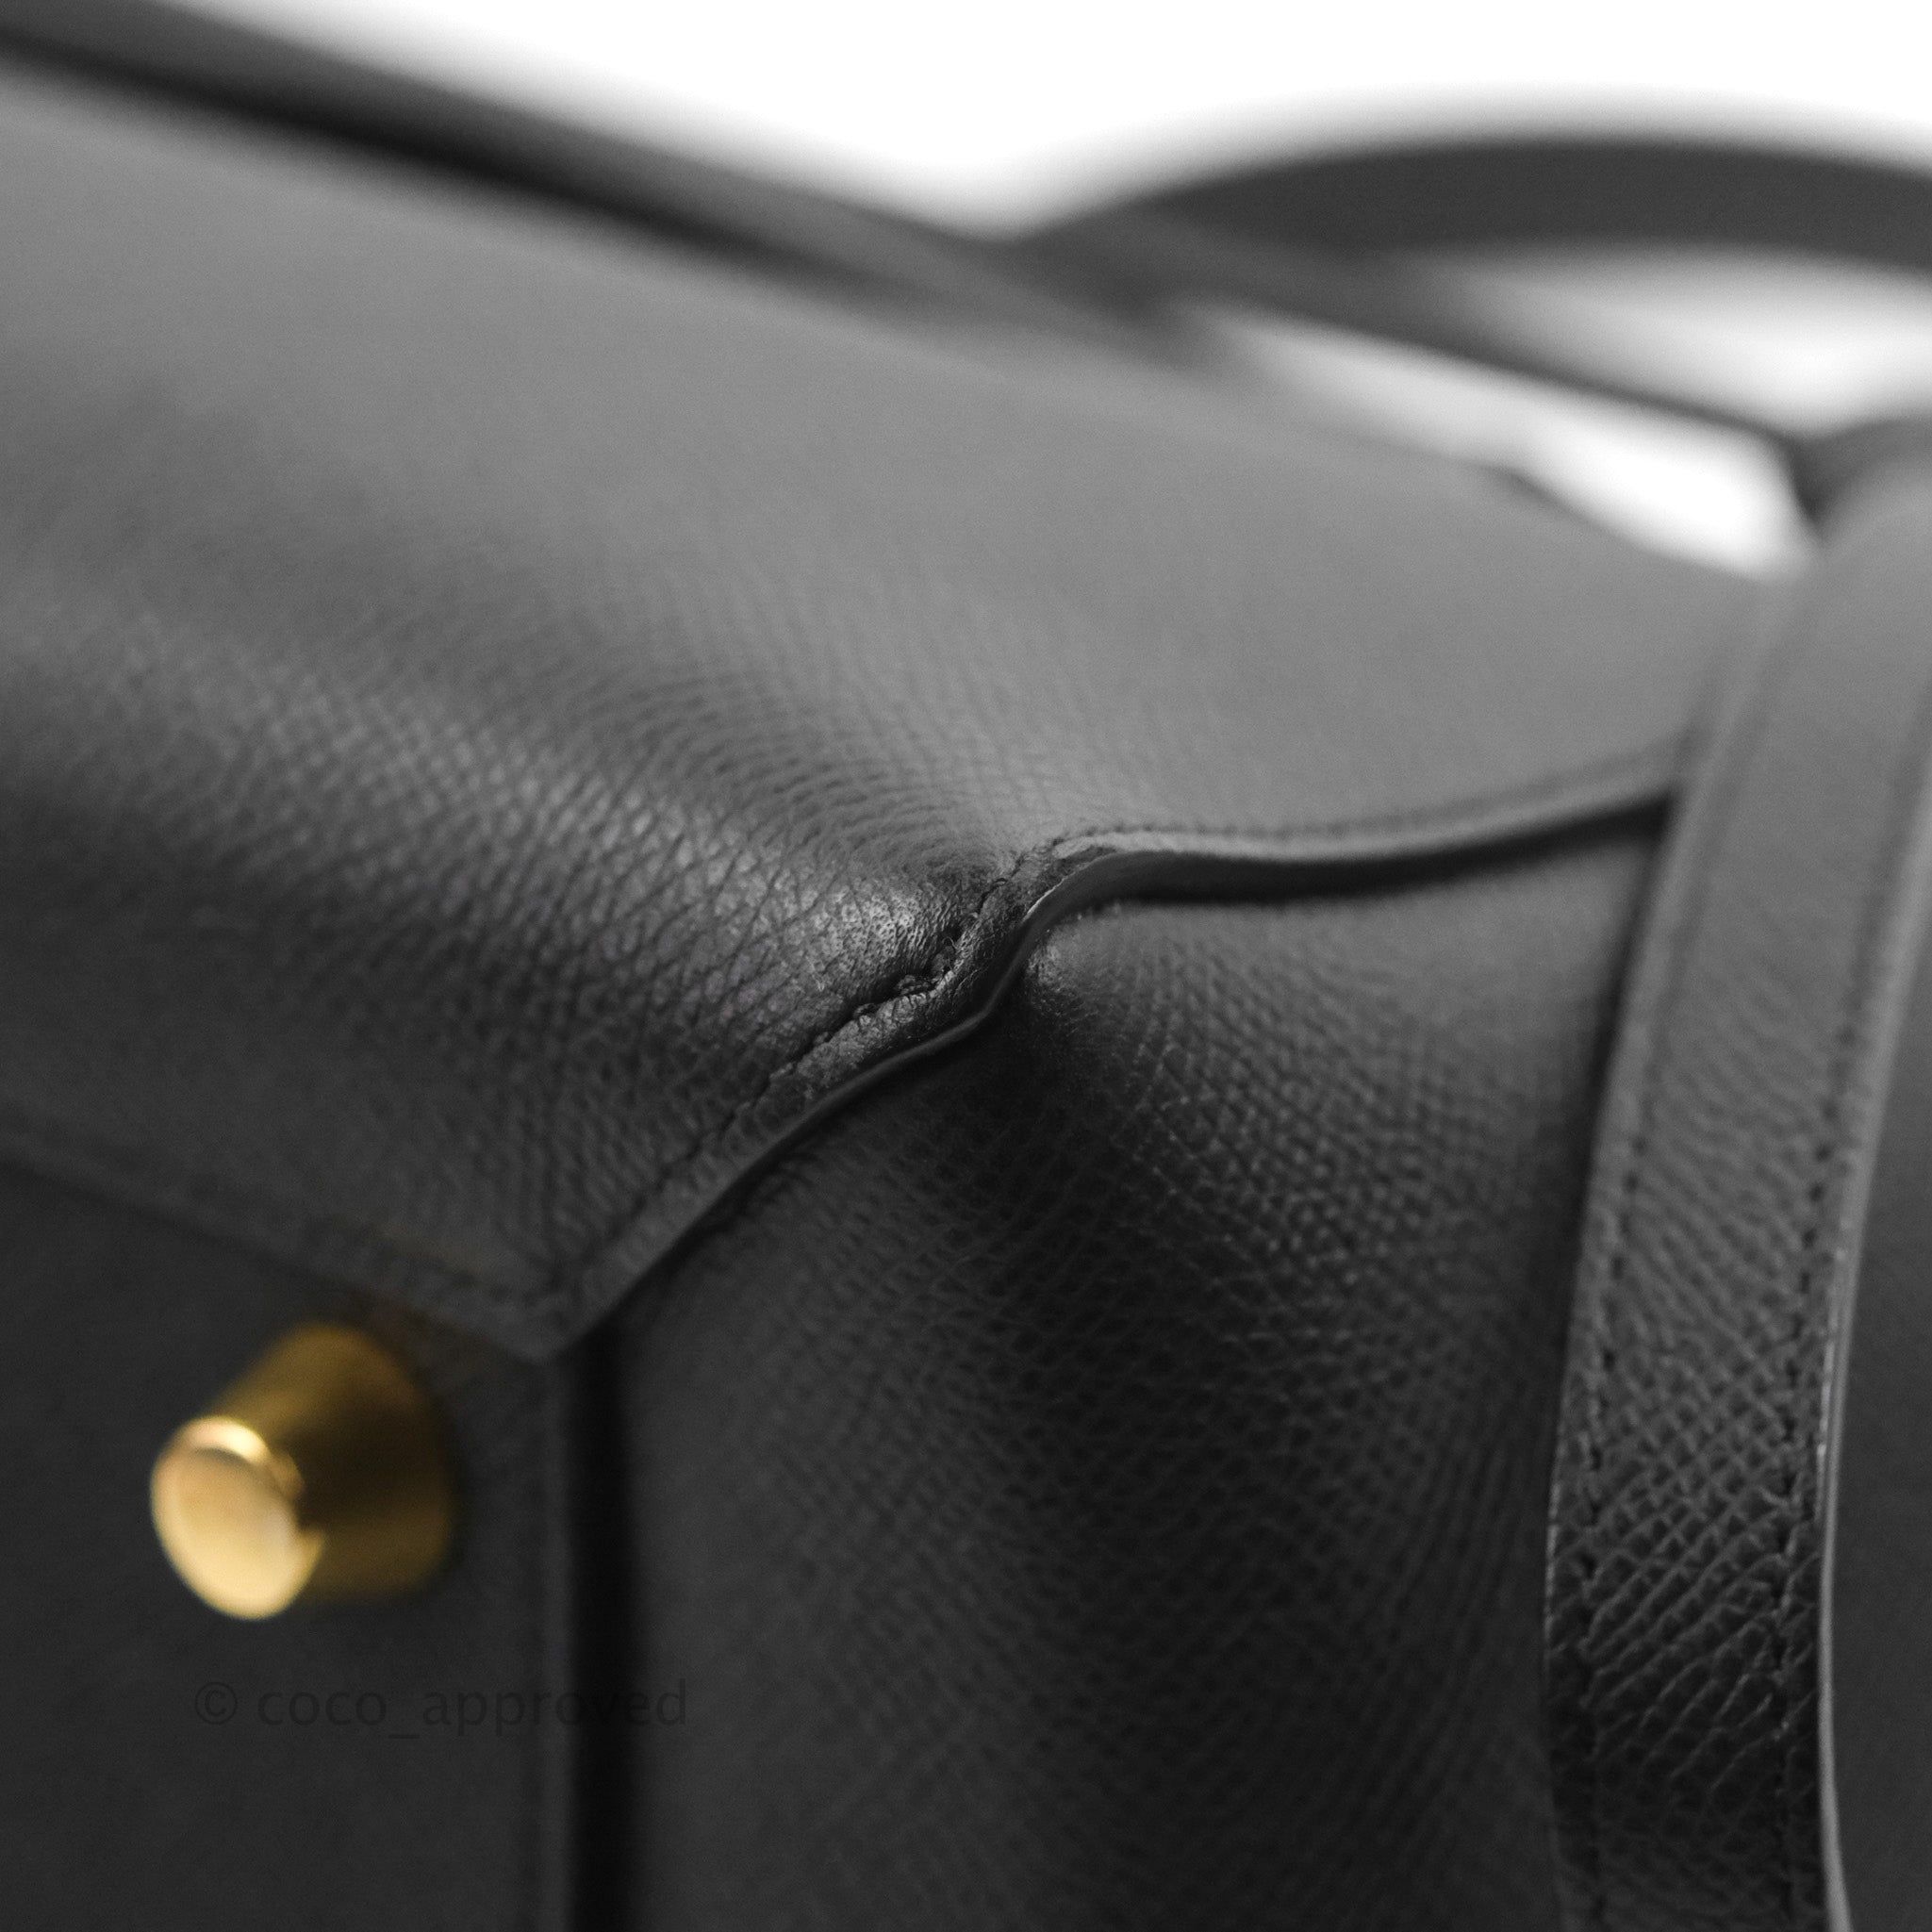 Celine Grained Calfskin Nano Belt Bag Pale Pink Gold Hardware – Coco  Approved Studio